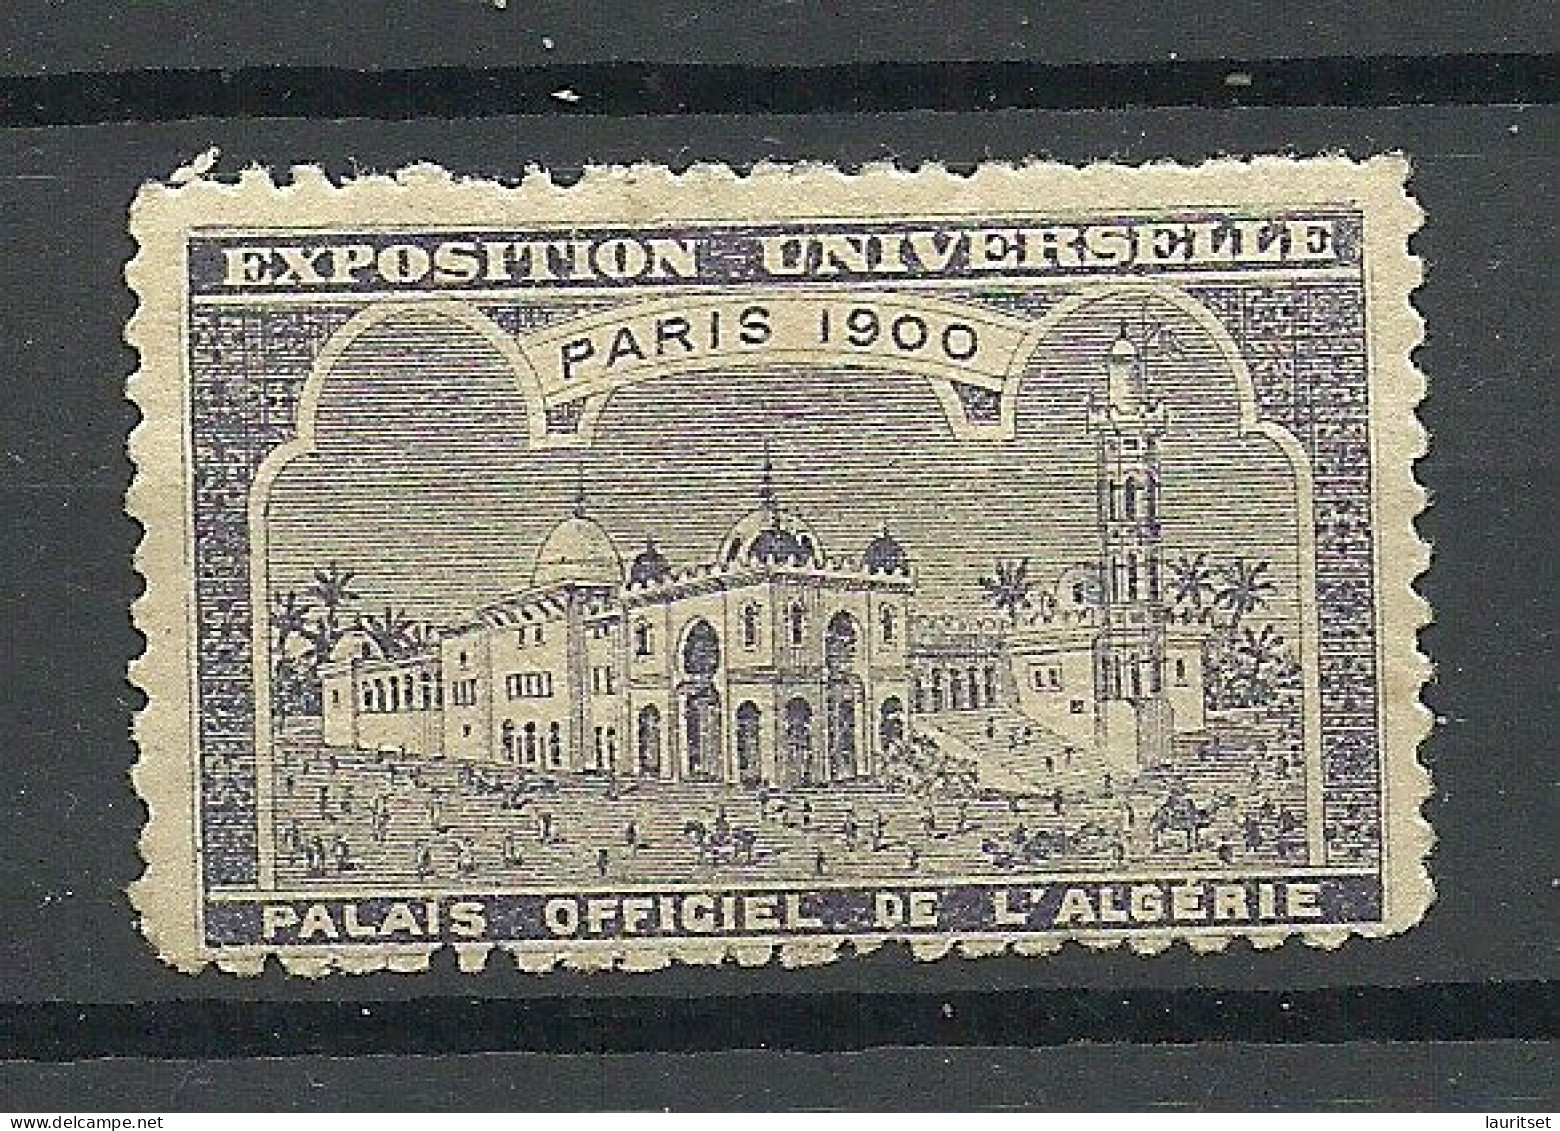 France 1900 EXPOSITION UNIVERSELLE Paris Algeria L`Algerie * - 1900 – Parigi (Francia)